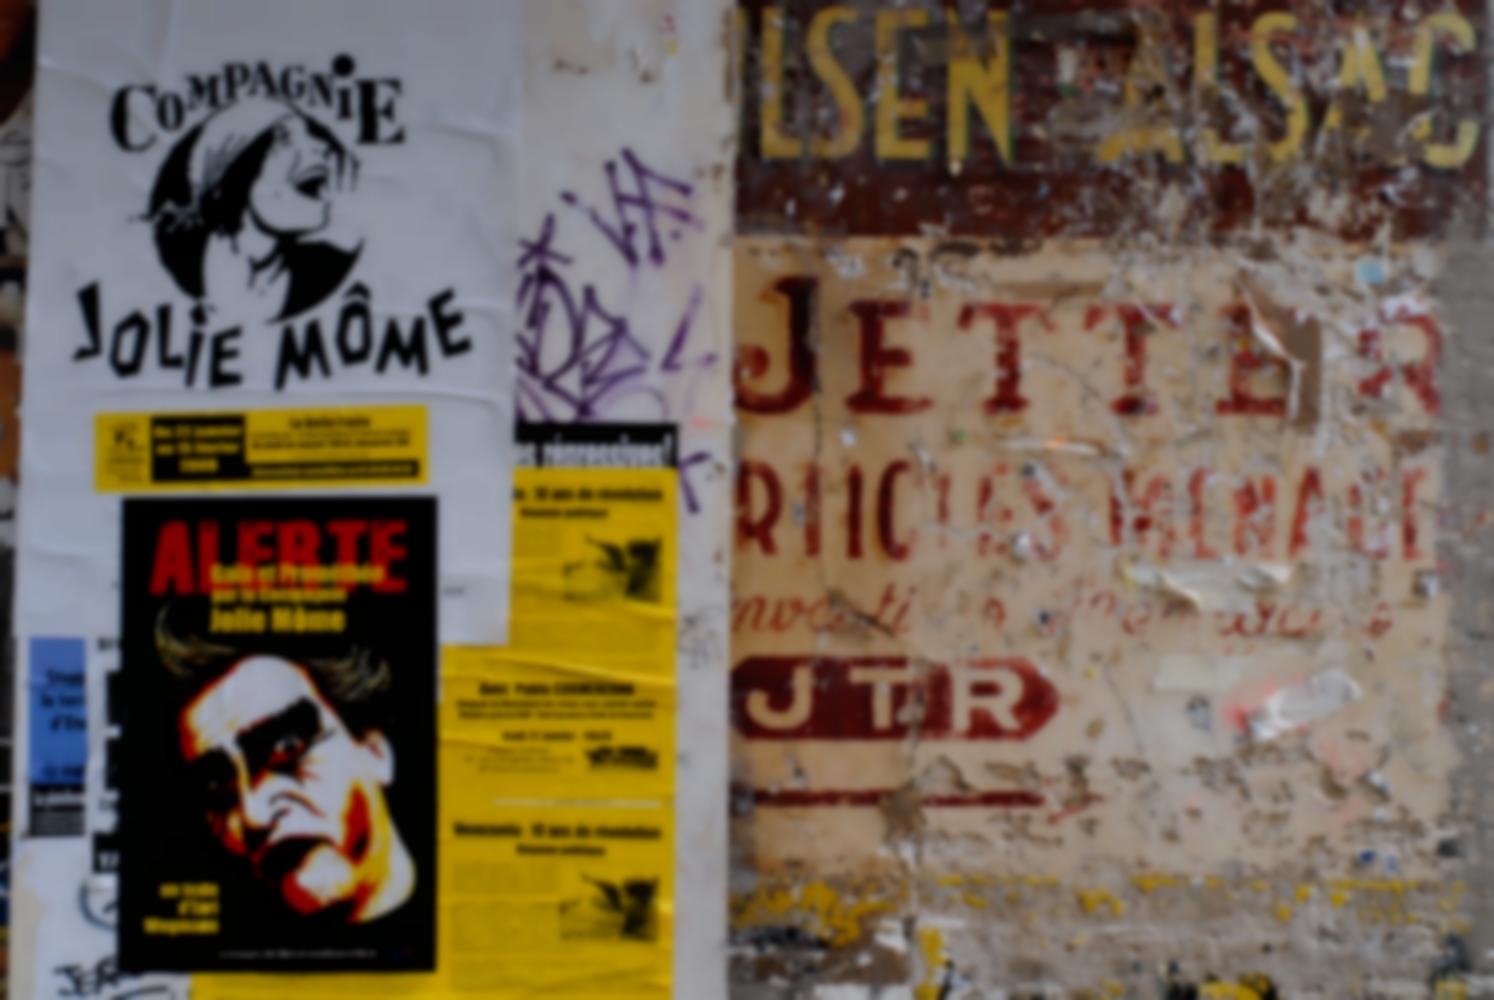 Affiches de la compagnie Jolie Môme et d'une réunion politique sur le Vénézuela, collées sur un mur peint d'une ancienne enseigne cour des Petites Ecuries. Paris, janvier 2009,.